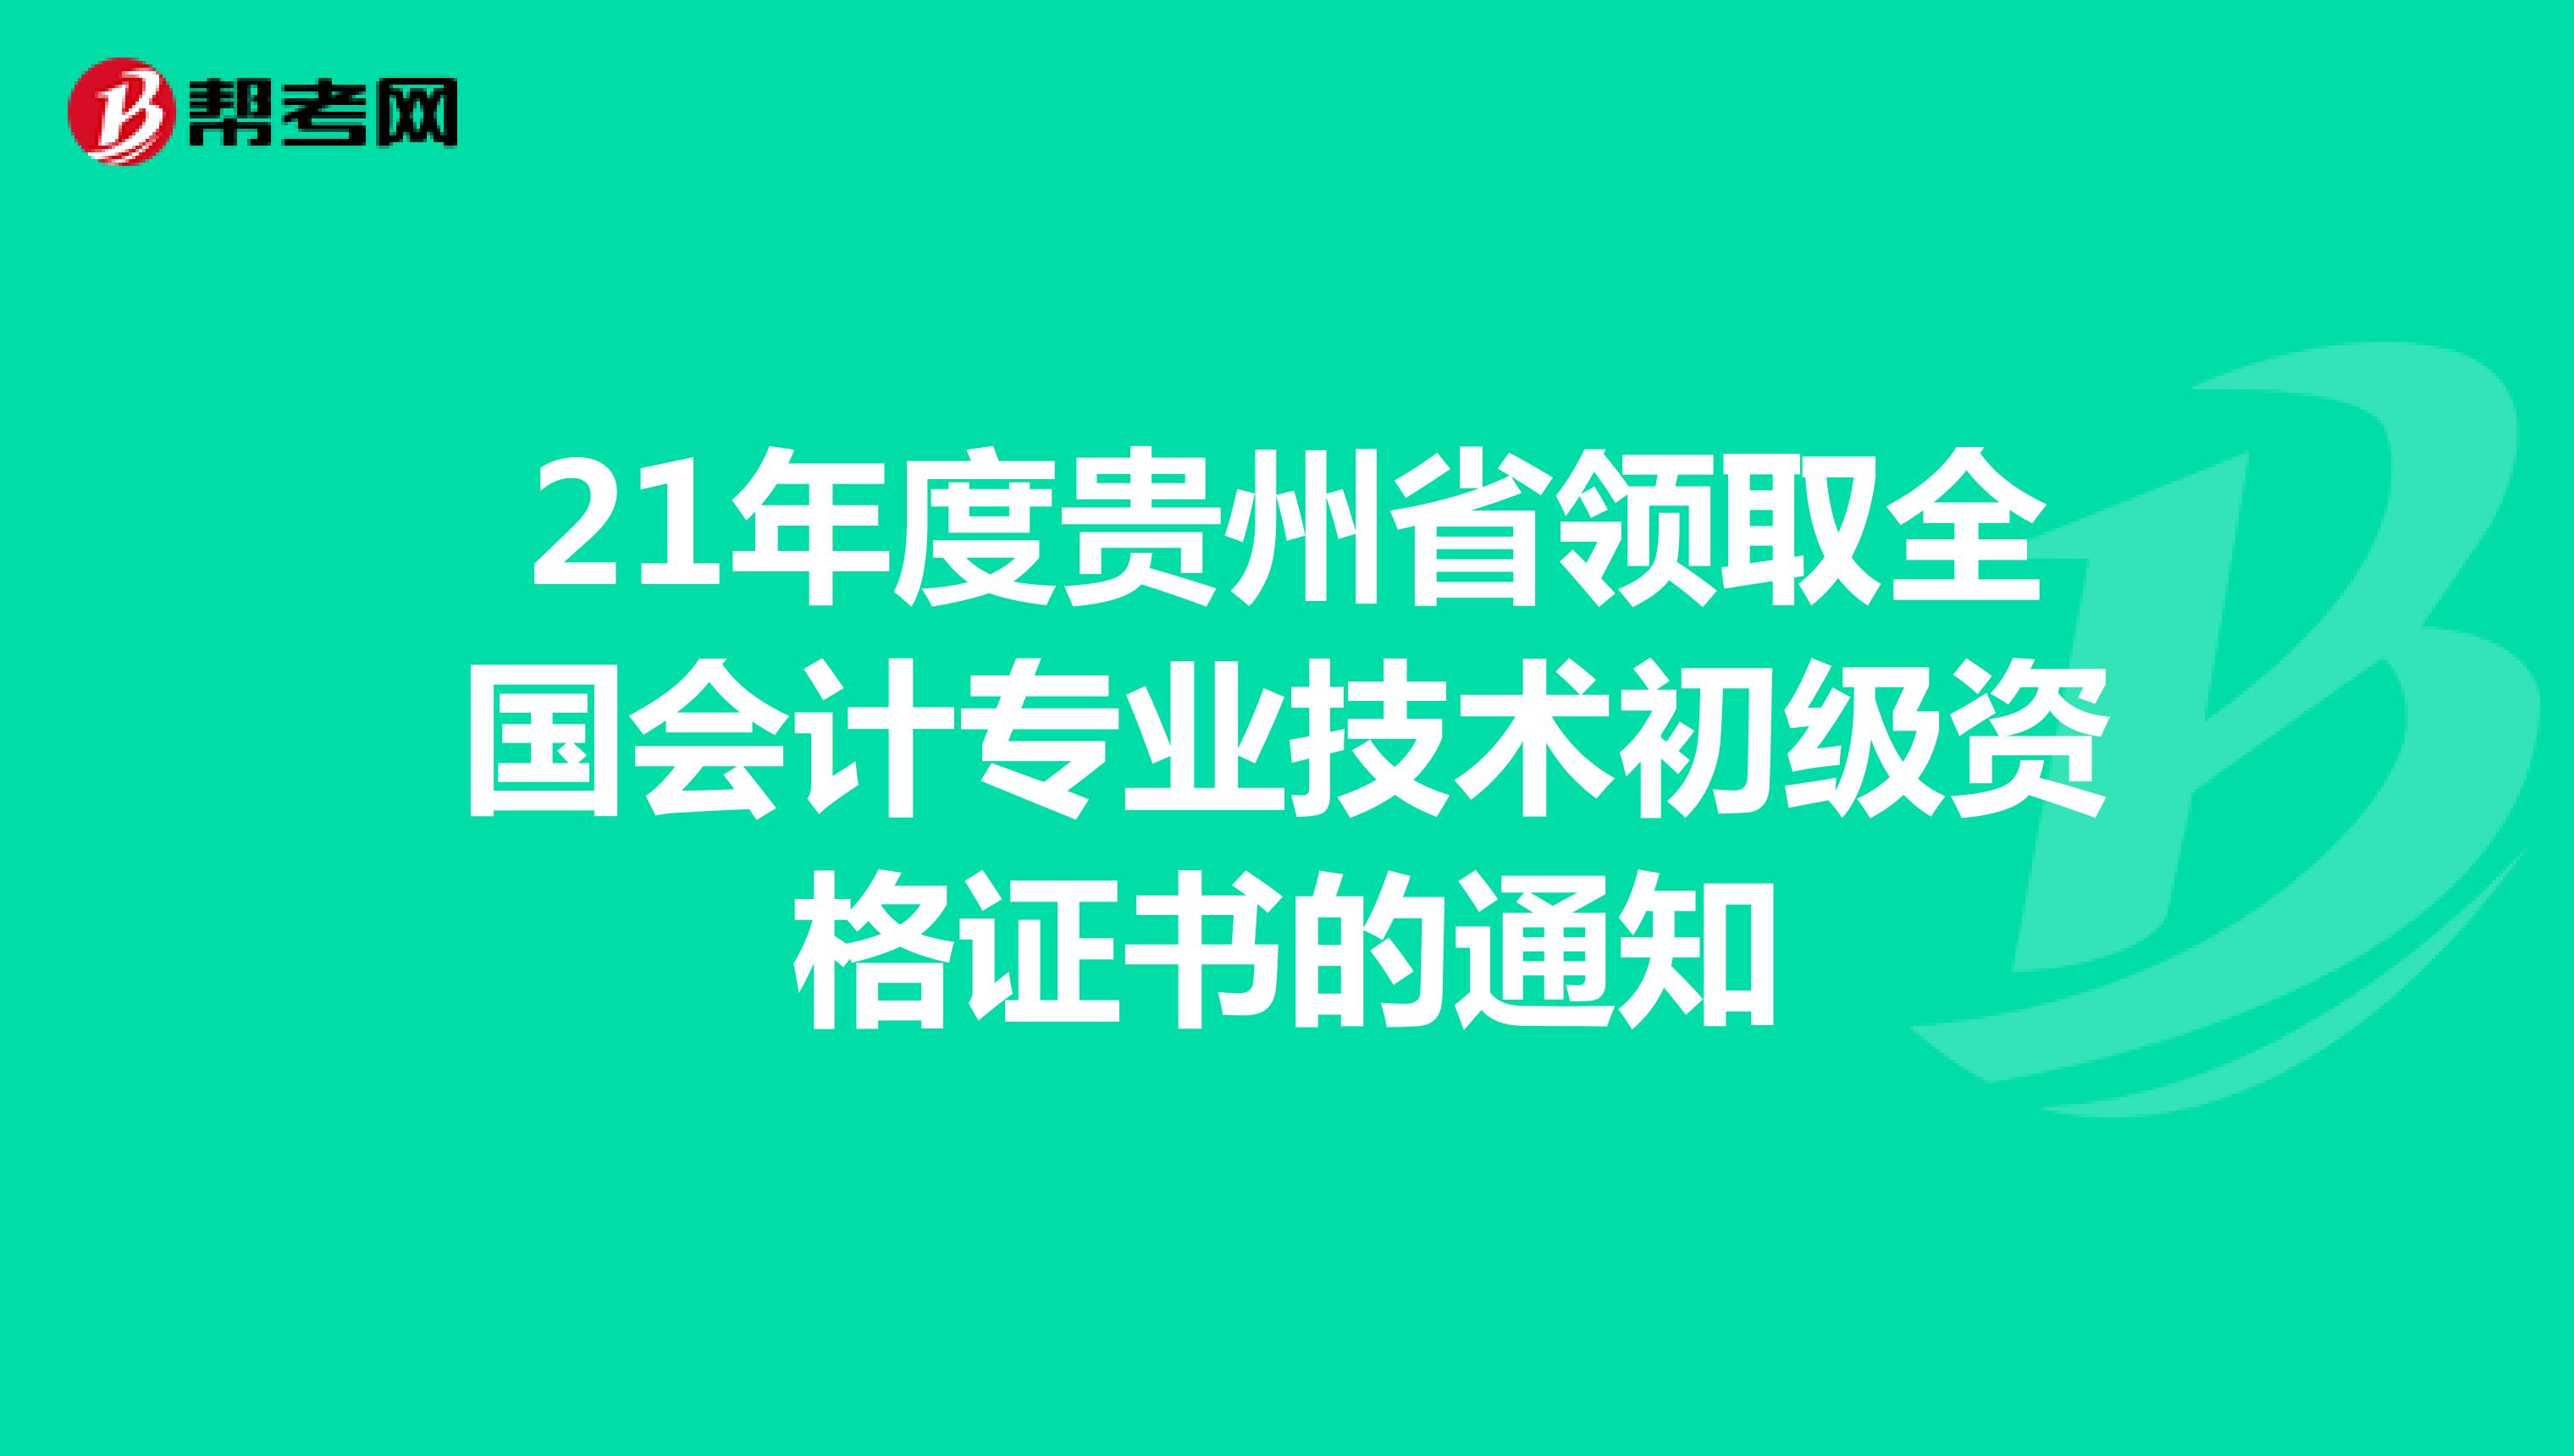 21年度贵州省领取全国会计专业技术初级资格证书的通知